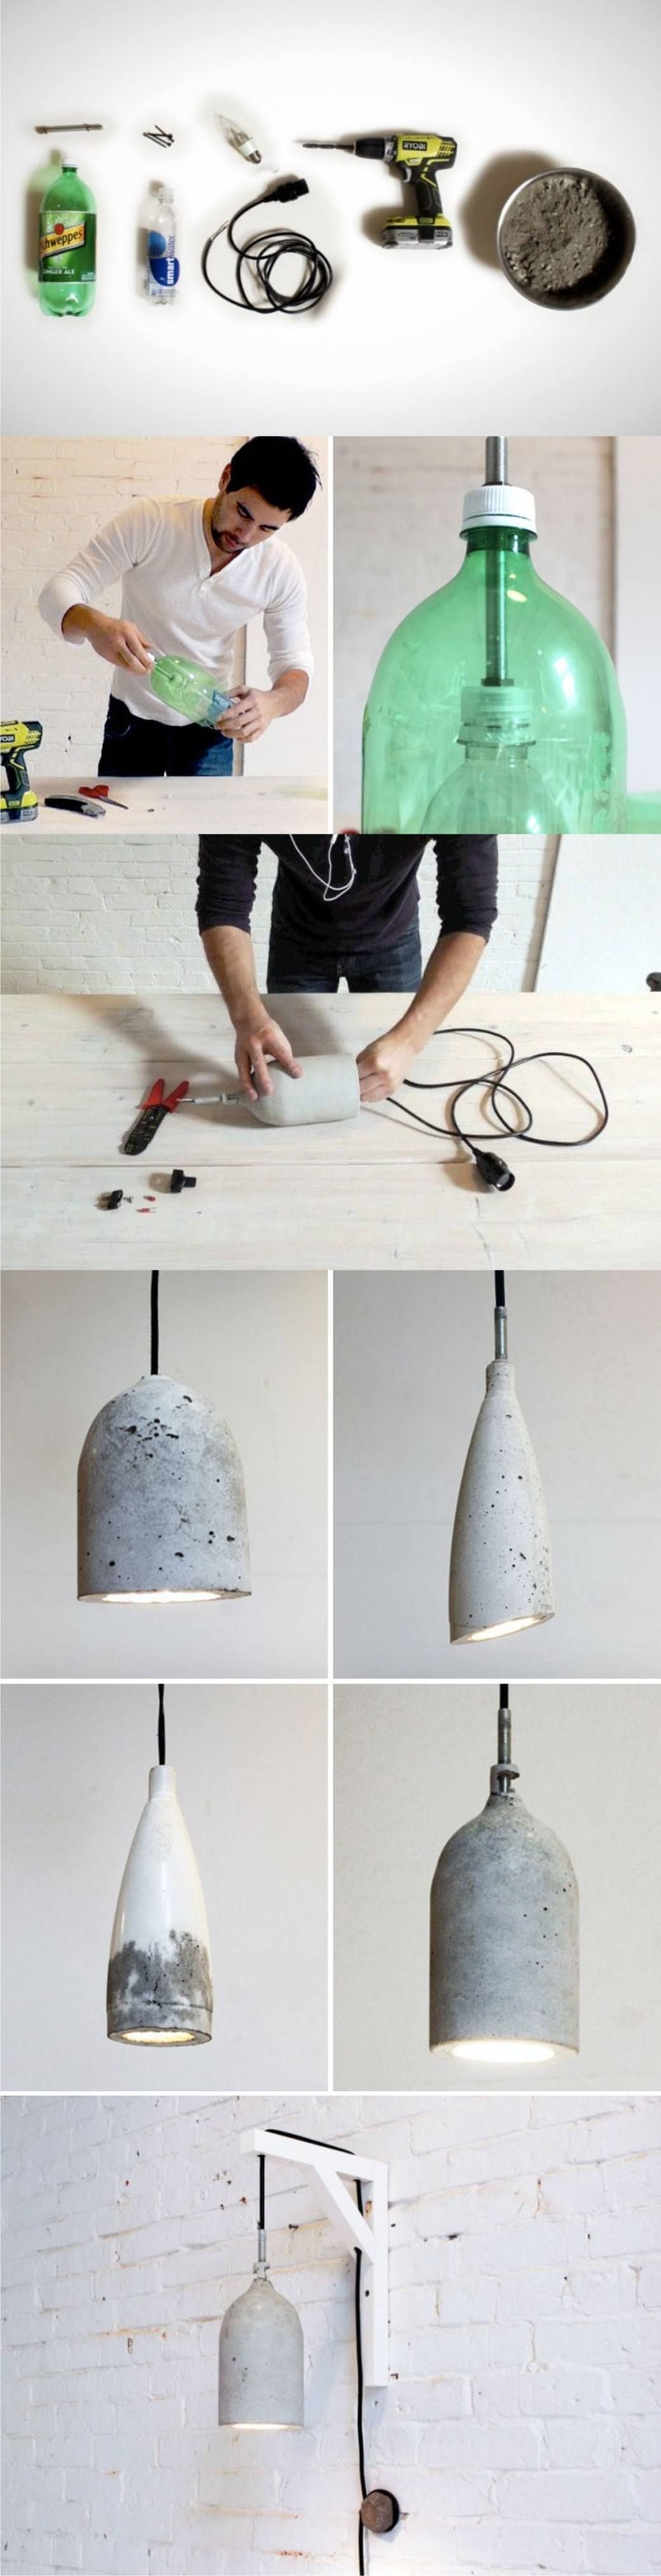 DIY concrete lamp